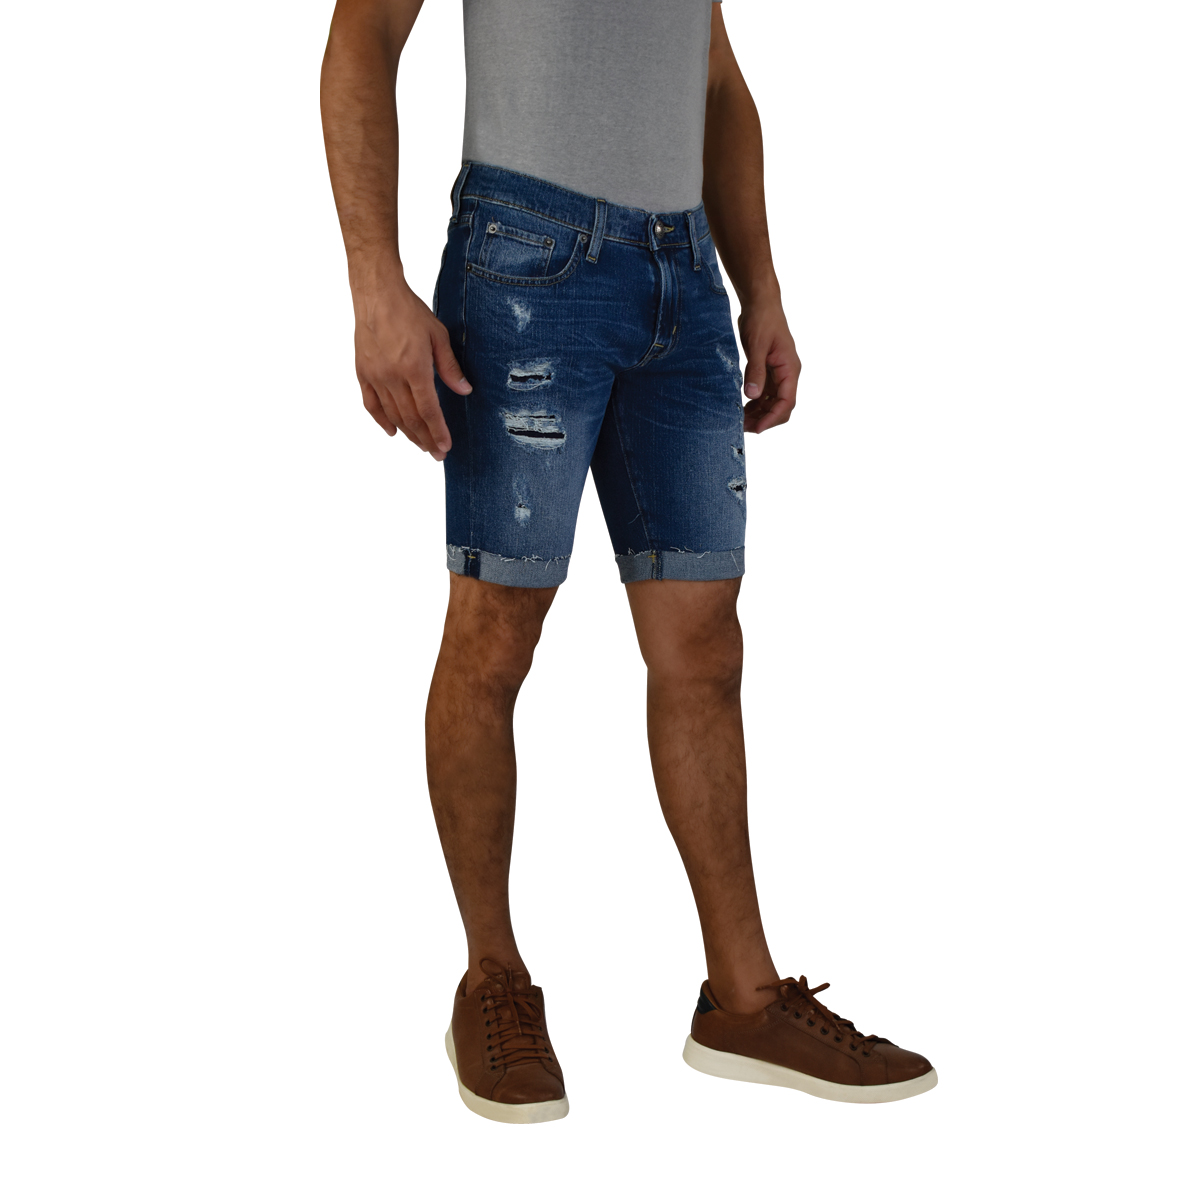 Comprar Jean corto y dulce blue jeans Pantalones cortos